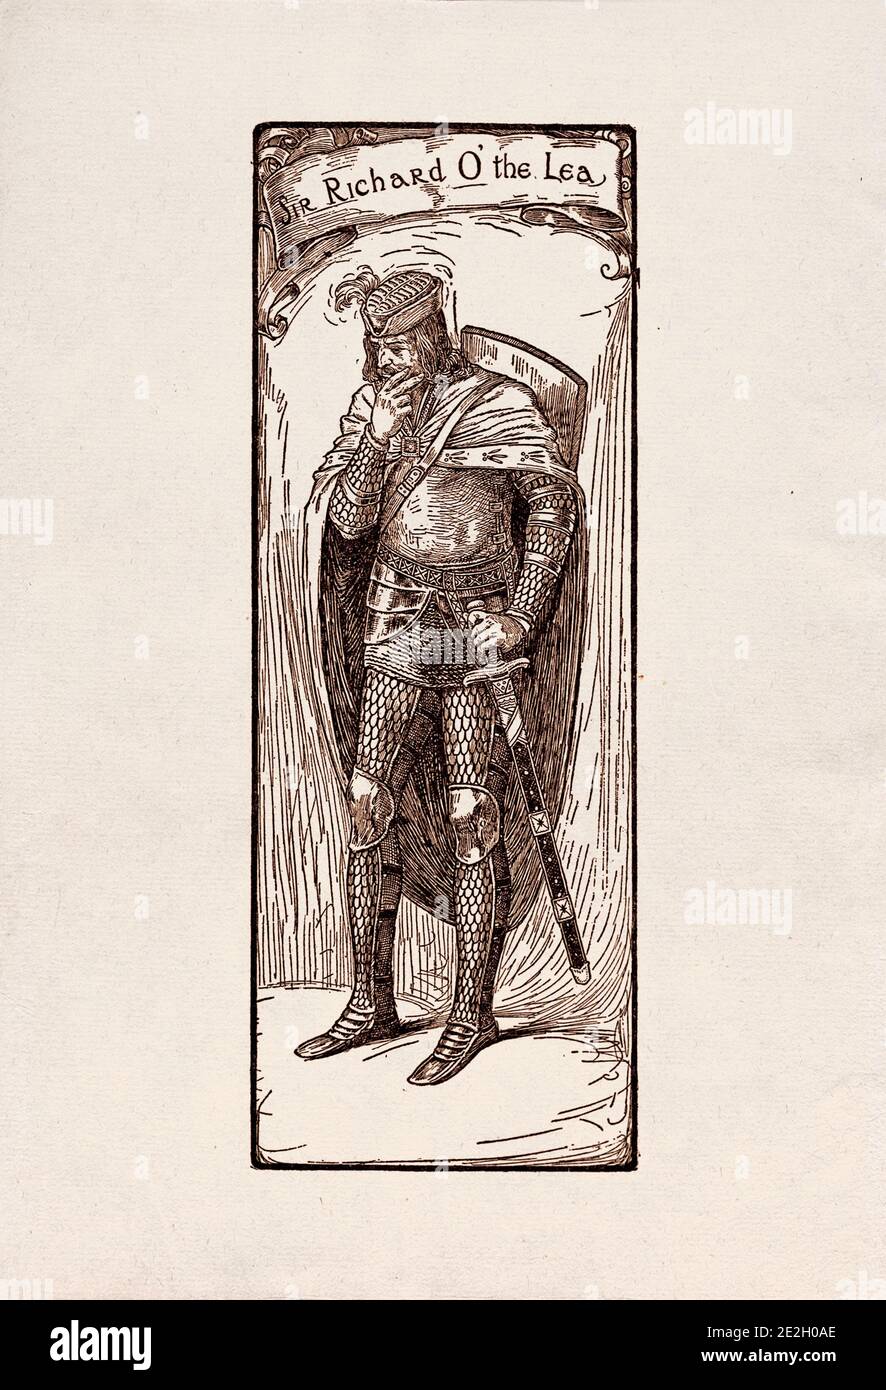 Gravure antique de personnages littéraires du folklore anglais des légendes Robin des Bois. Sir Richard à la Lee. Par Louis Rhead. 1912 Banque D'Images